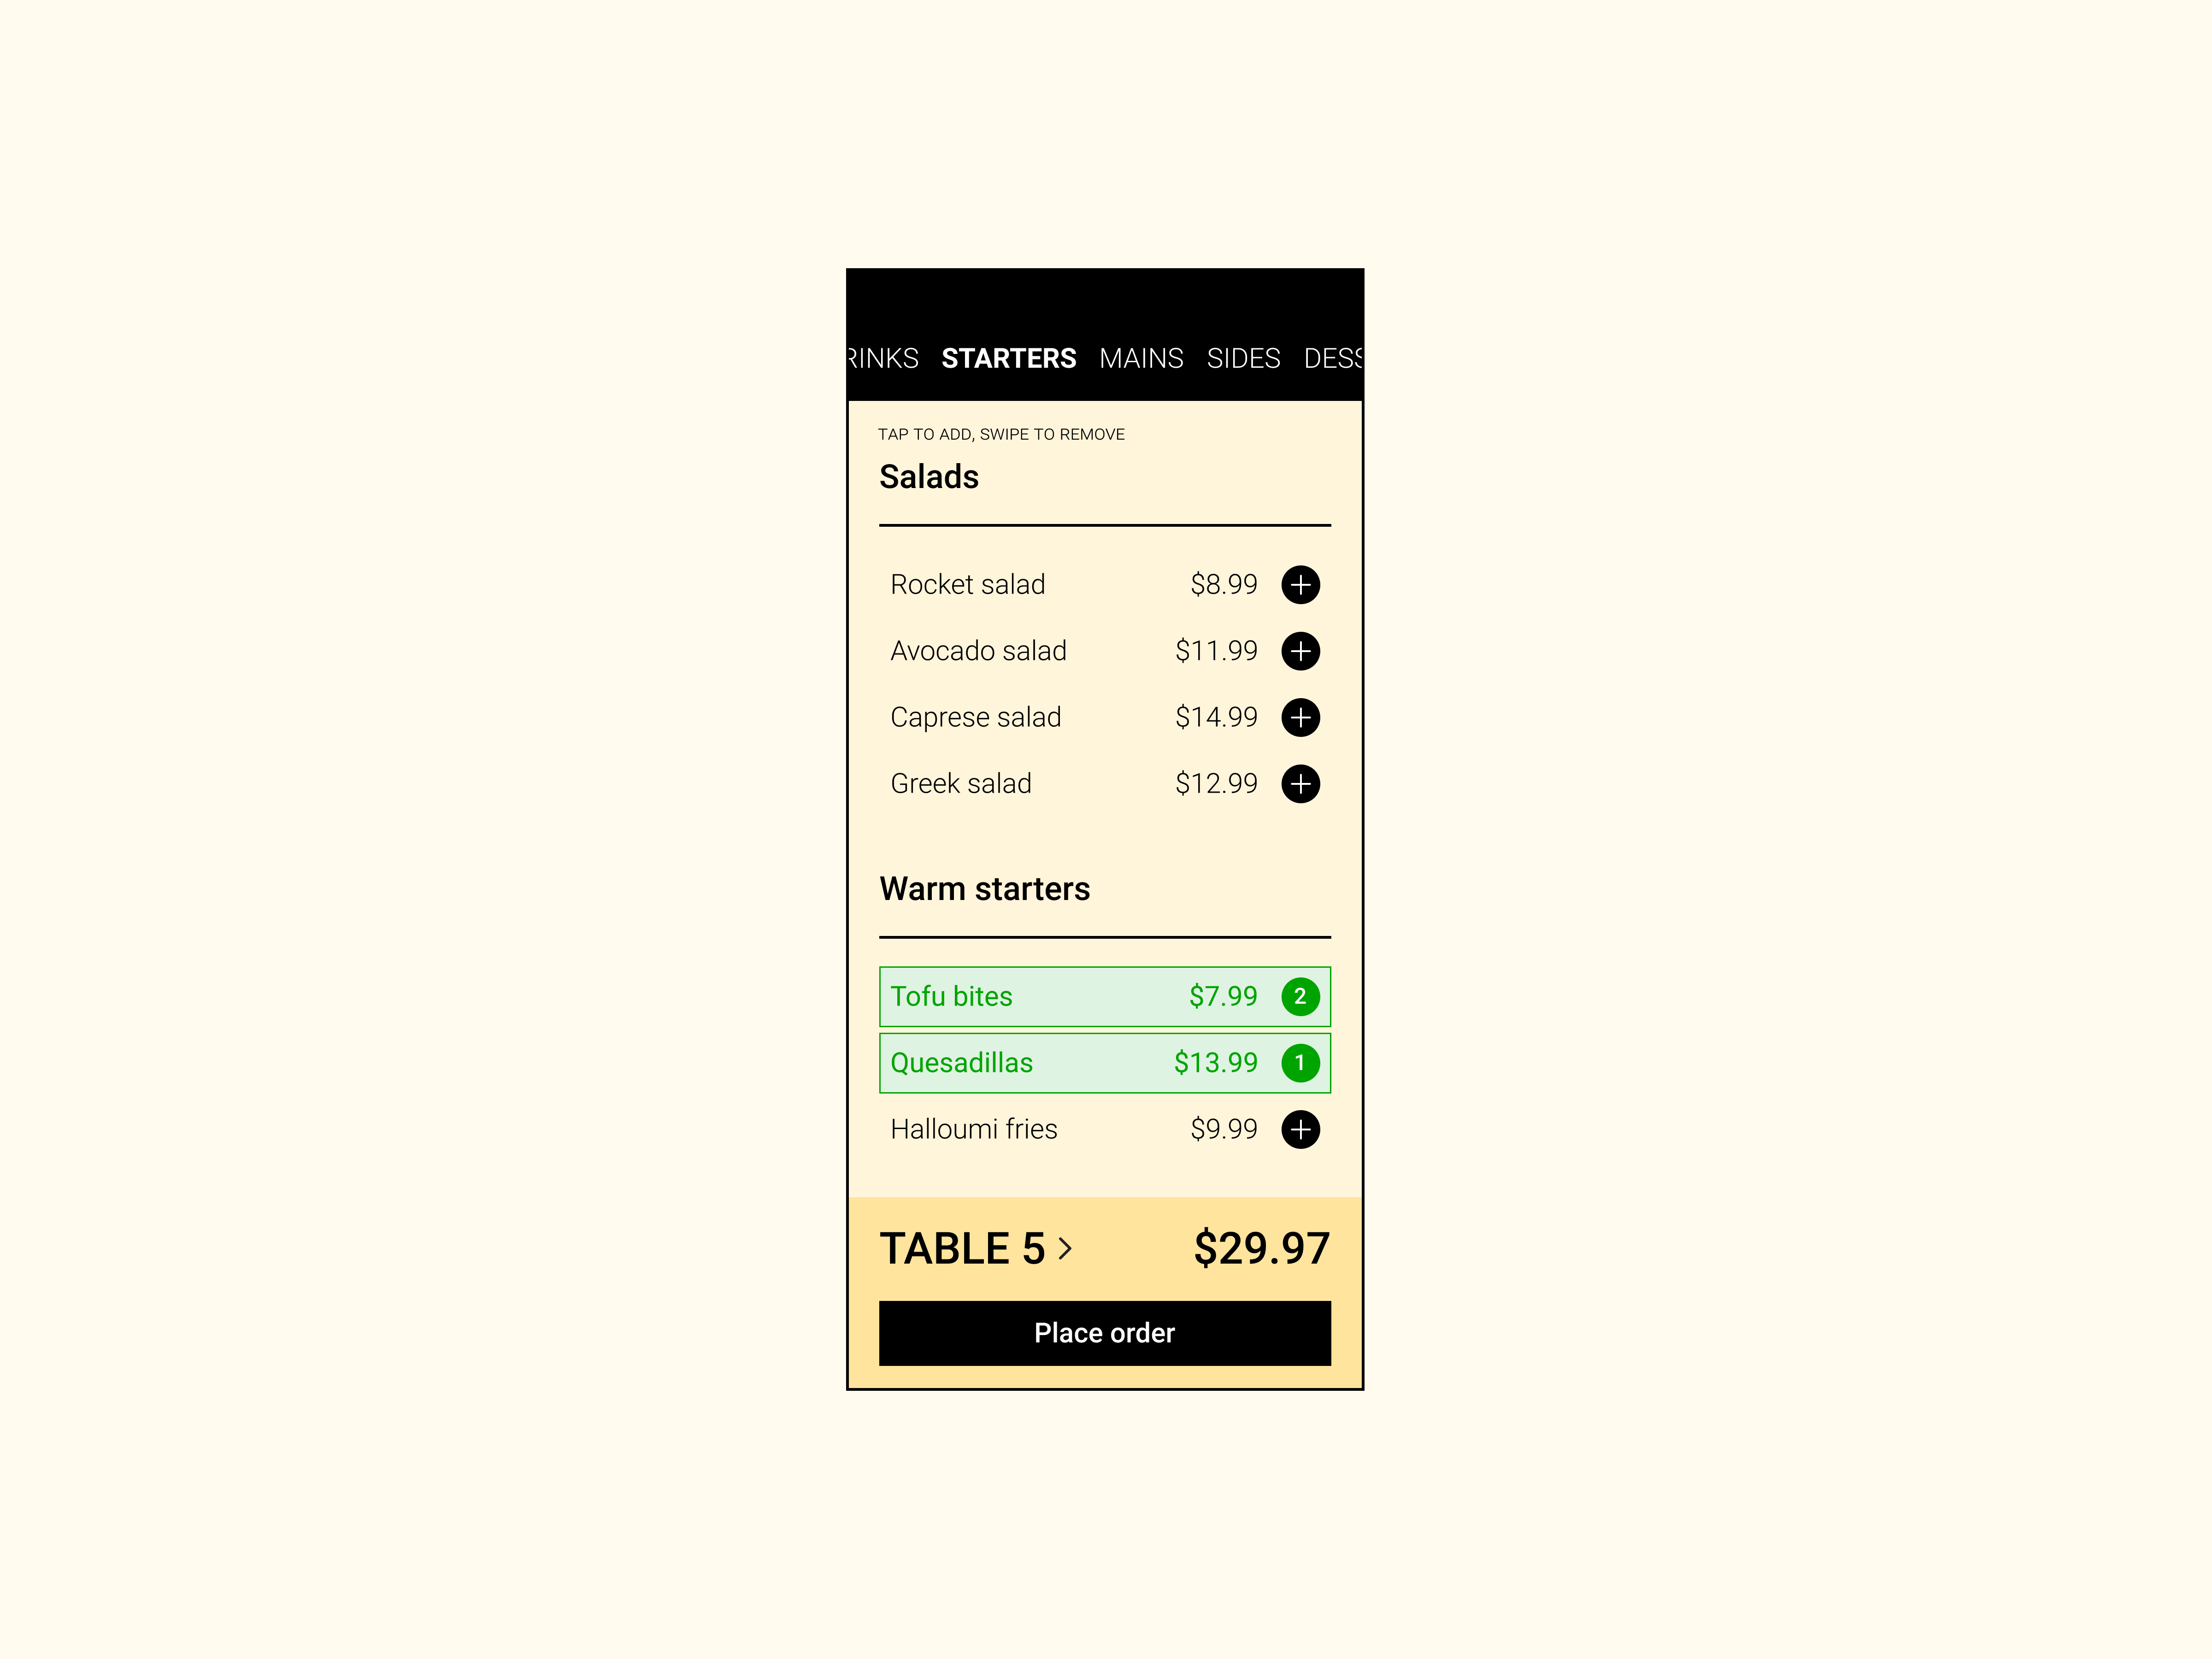 A screenshot of the UI for a food menu app